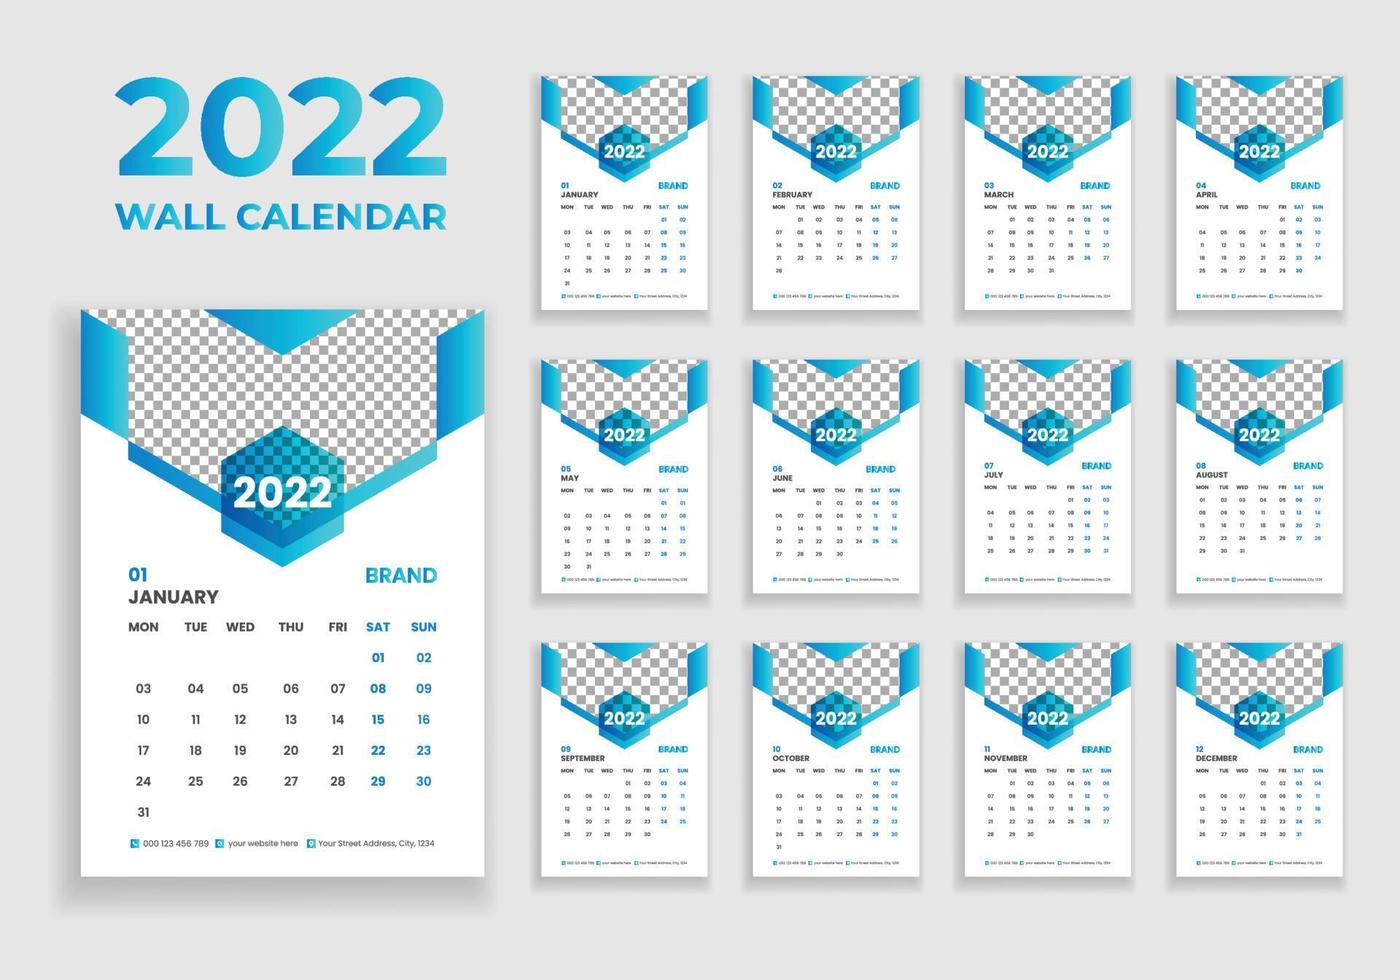 diseño de calendario de pared 2022. diseño de calendario de pared 2022. diseño de calendario de año nuevo 2022. la semana comienza el lunes. plantilla para calendario anual 2022 vector